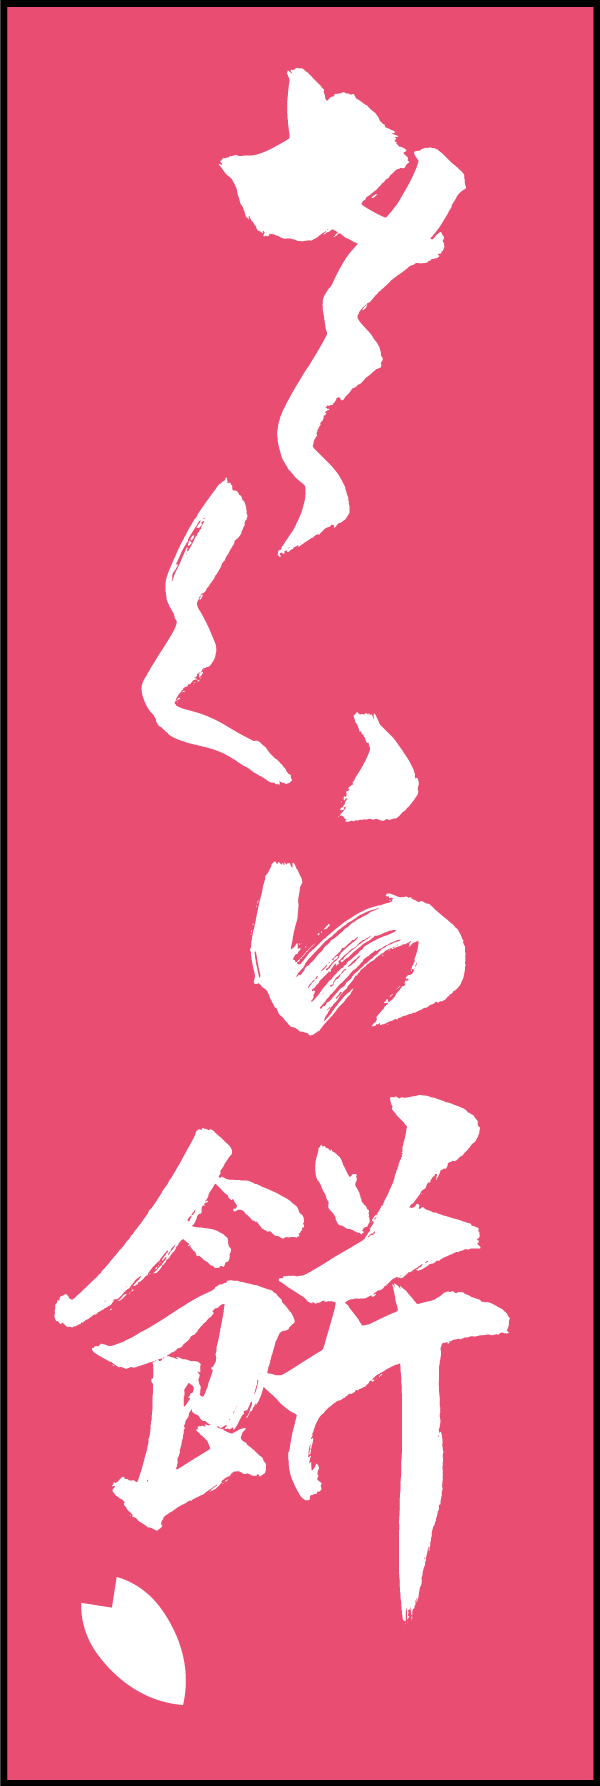 さくら餅 206_03 「さくら餅」ののぼりです。江戸文字職人 加藤木大介氏による、手書きの筆文字です。完全書き下ろし、唯一無二ののぼりは当店だけのオリジナル商品です。（T.M）